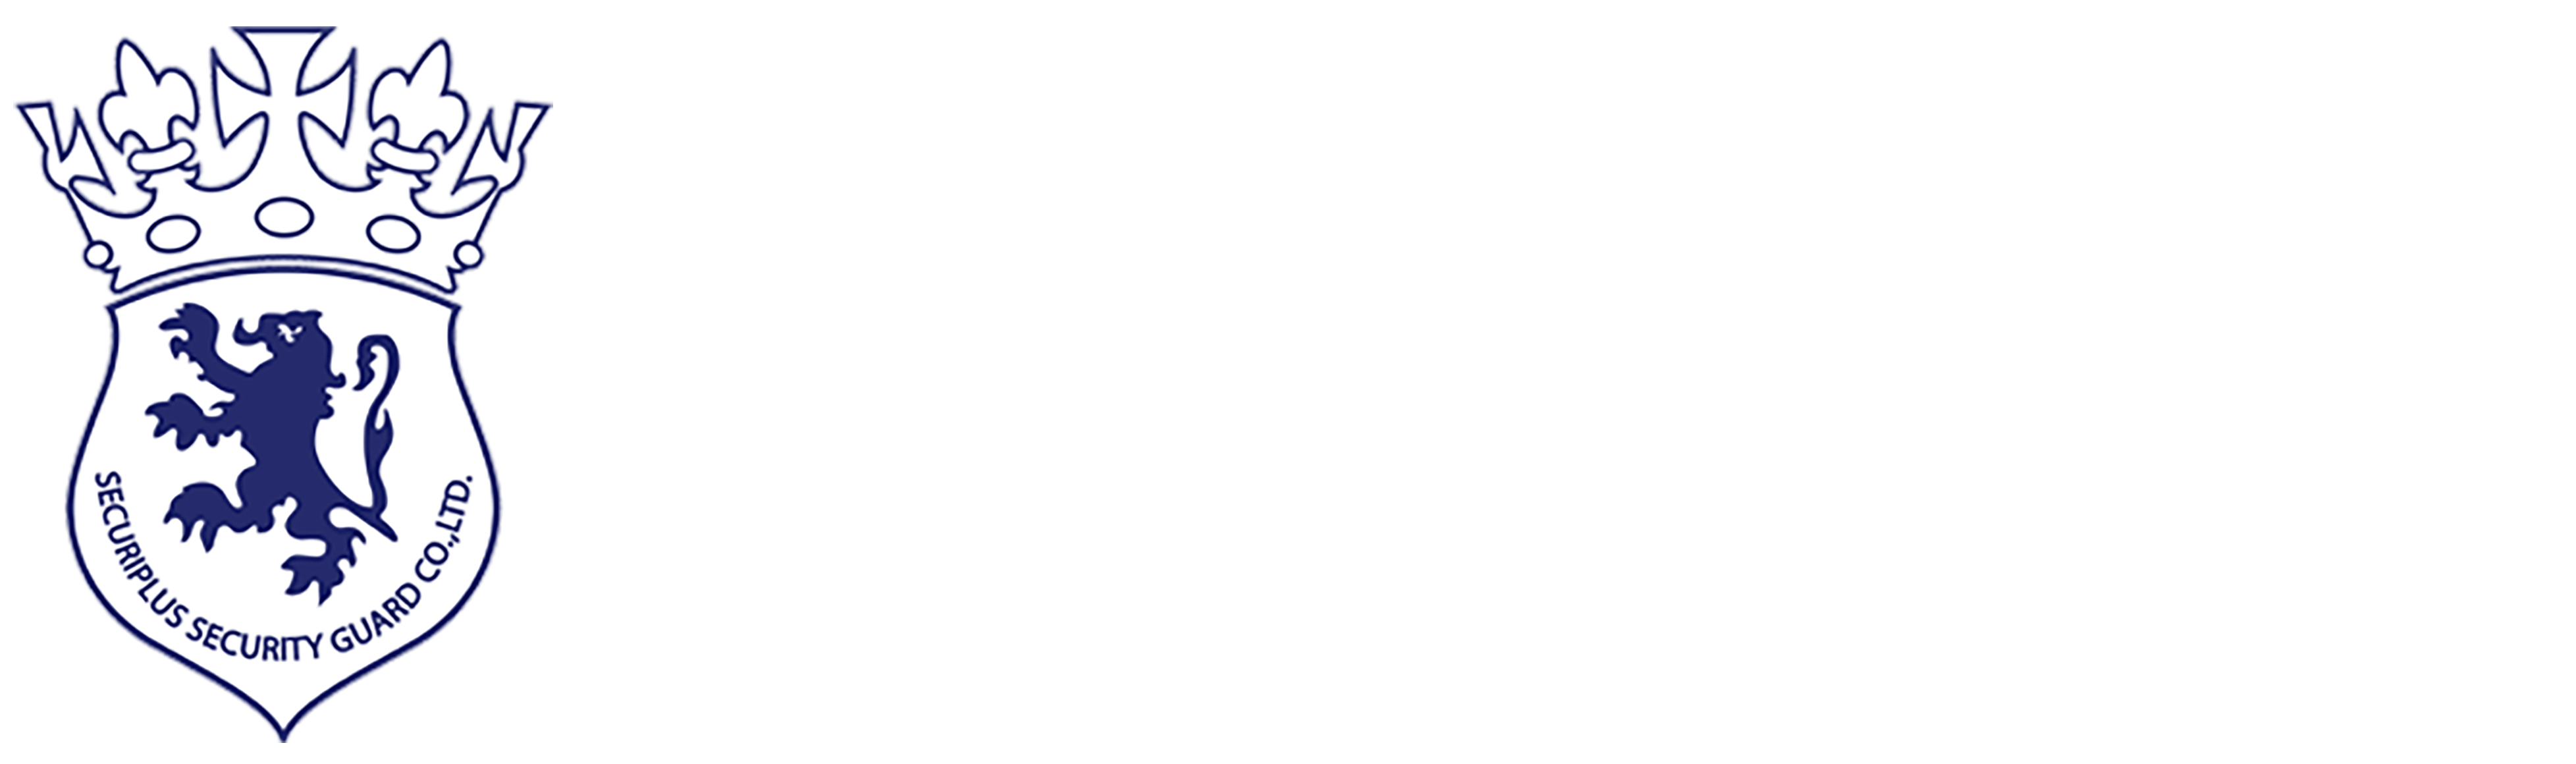 SECURIPLUS SECURITY GUARD CO., LTD.